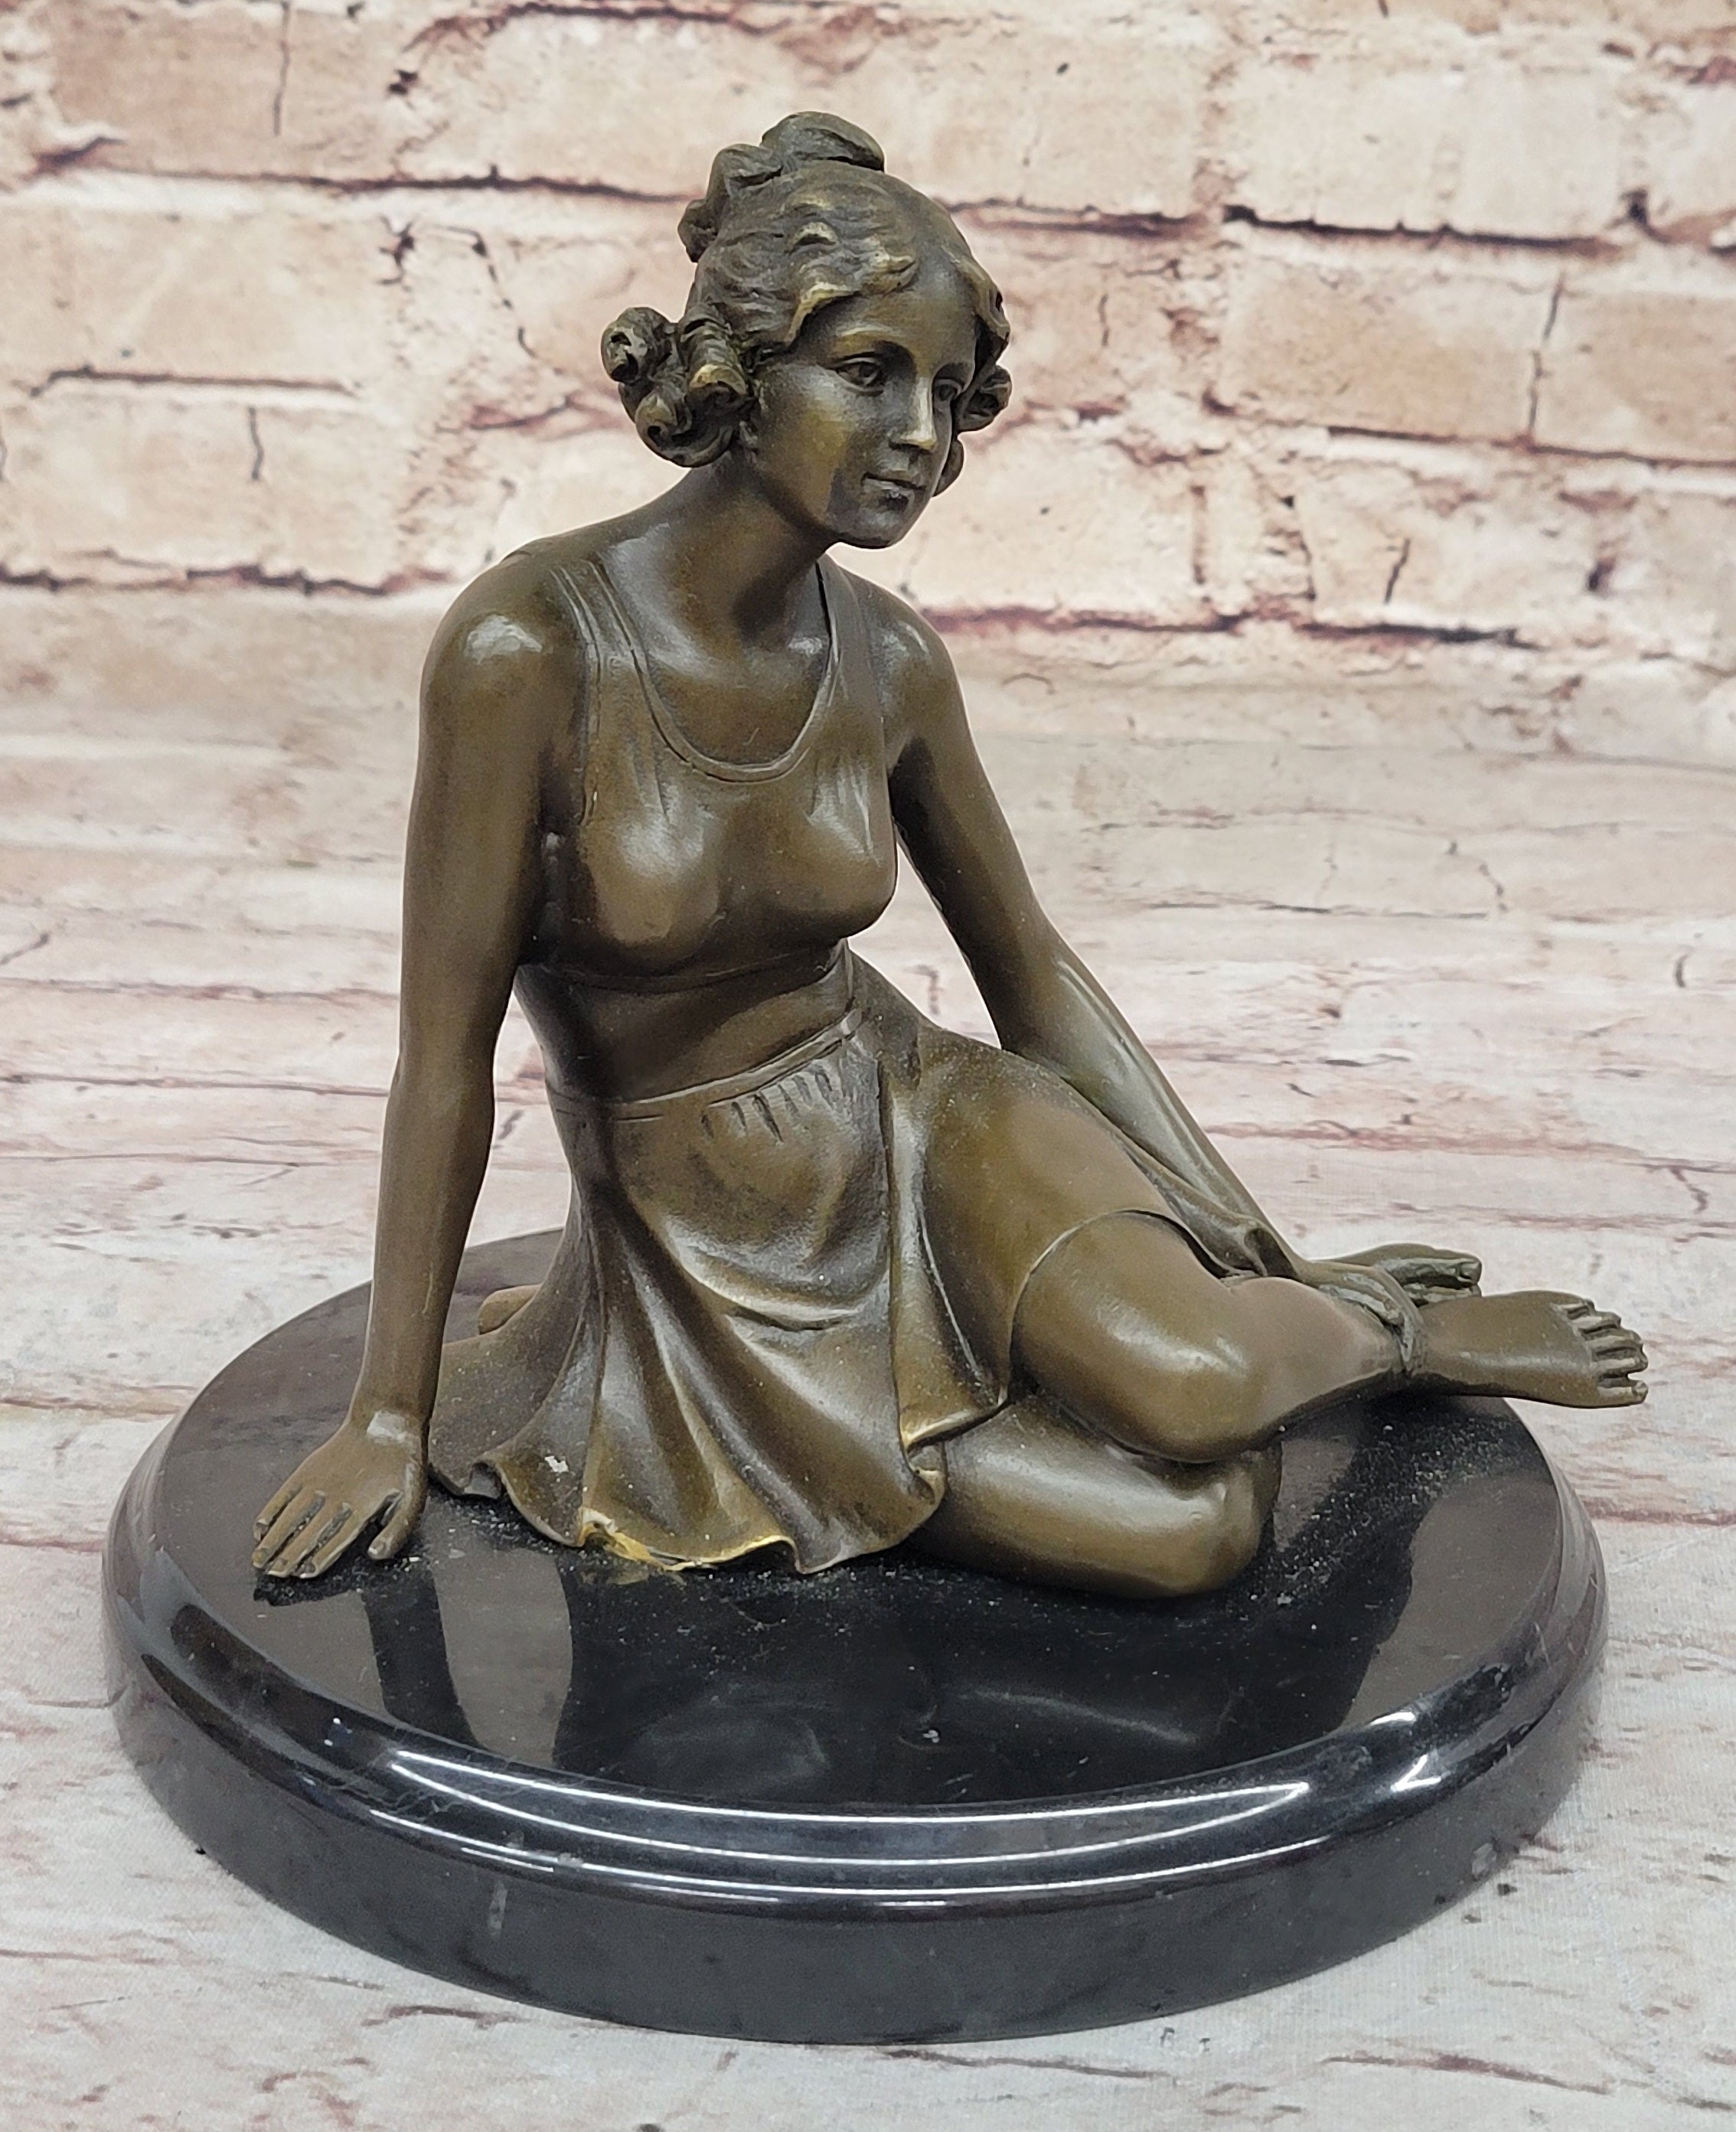 Signed Unique Bronze Sculpture Sexy Erotic Nude Female Form Statue Home Decor